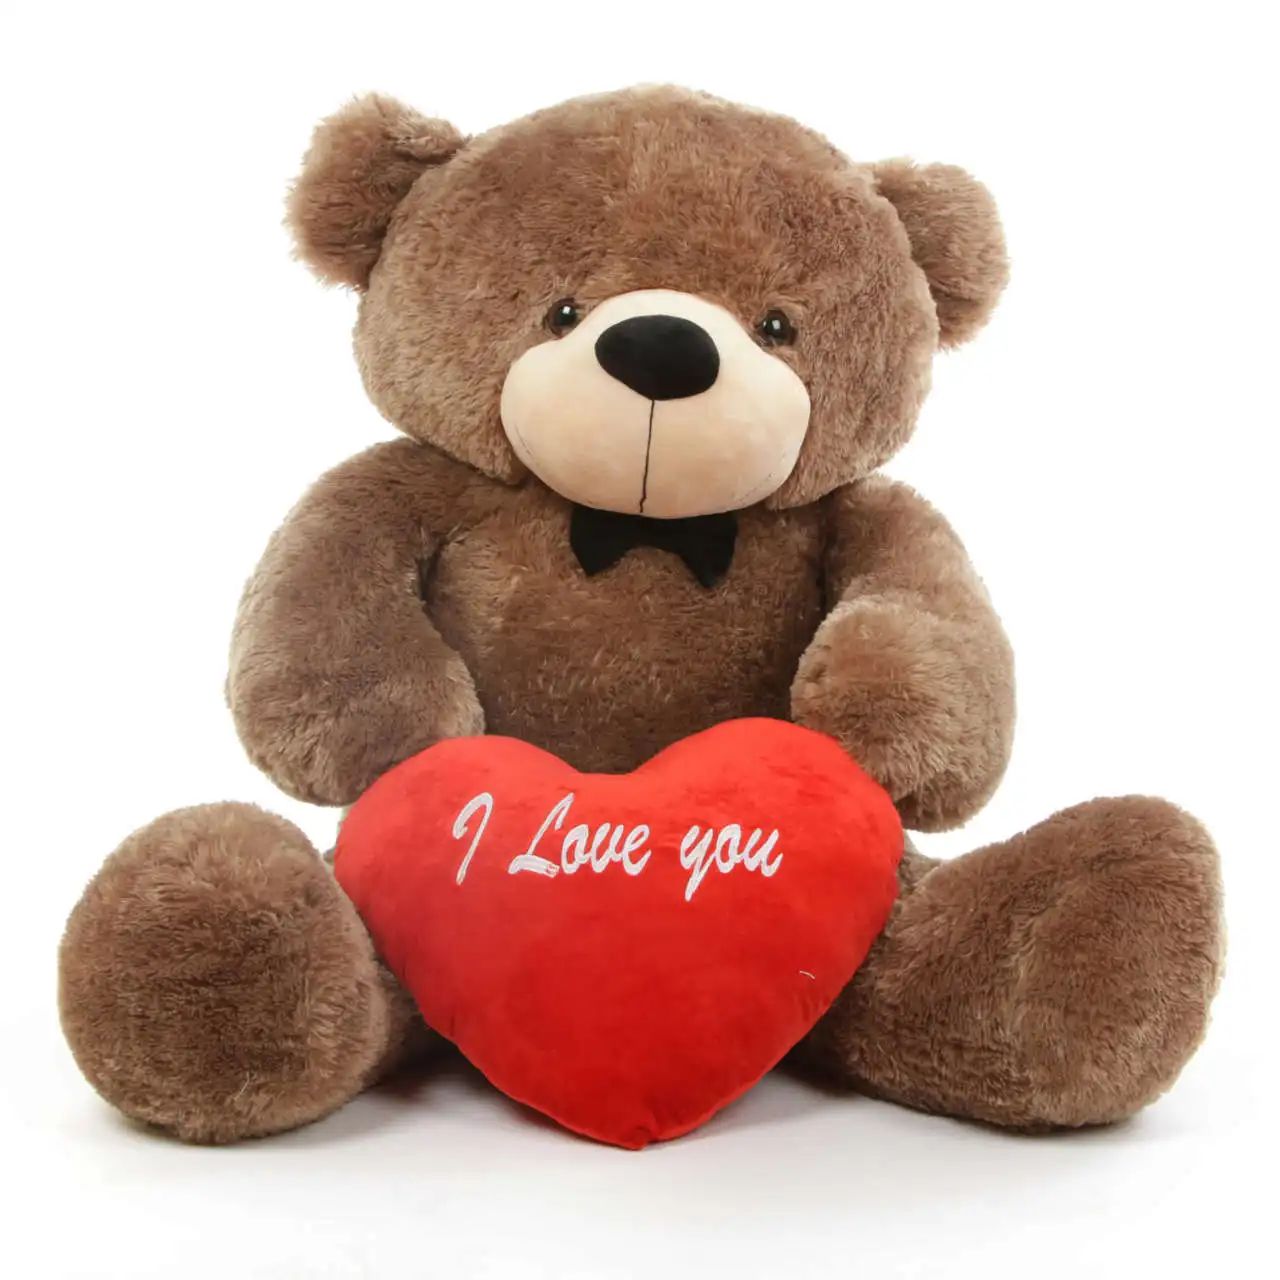 I Love you Teddy Bear